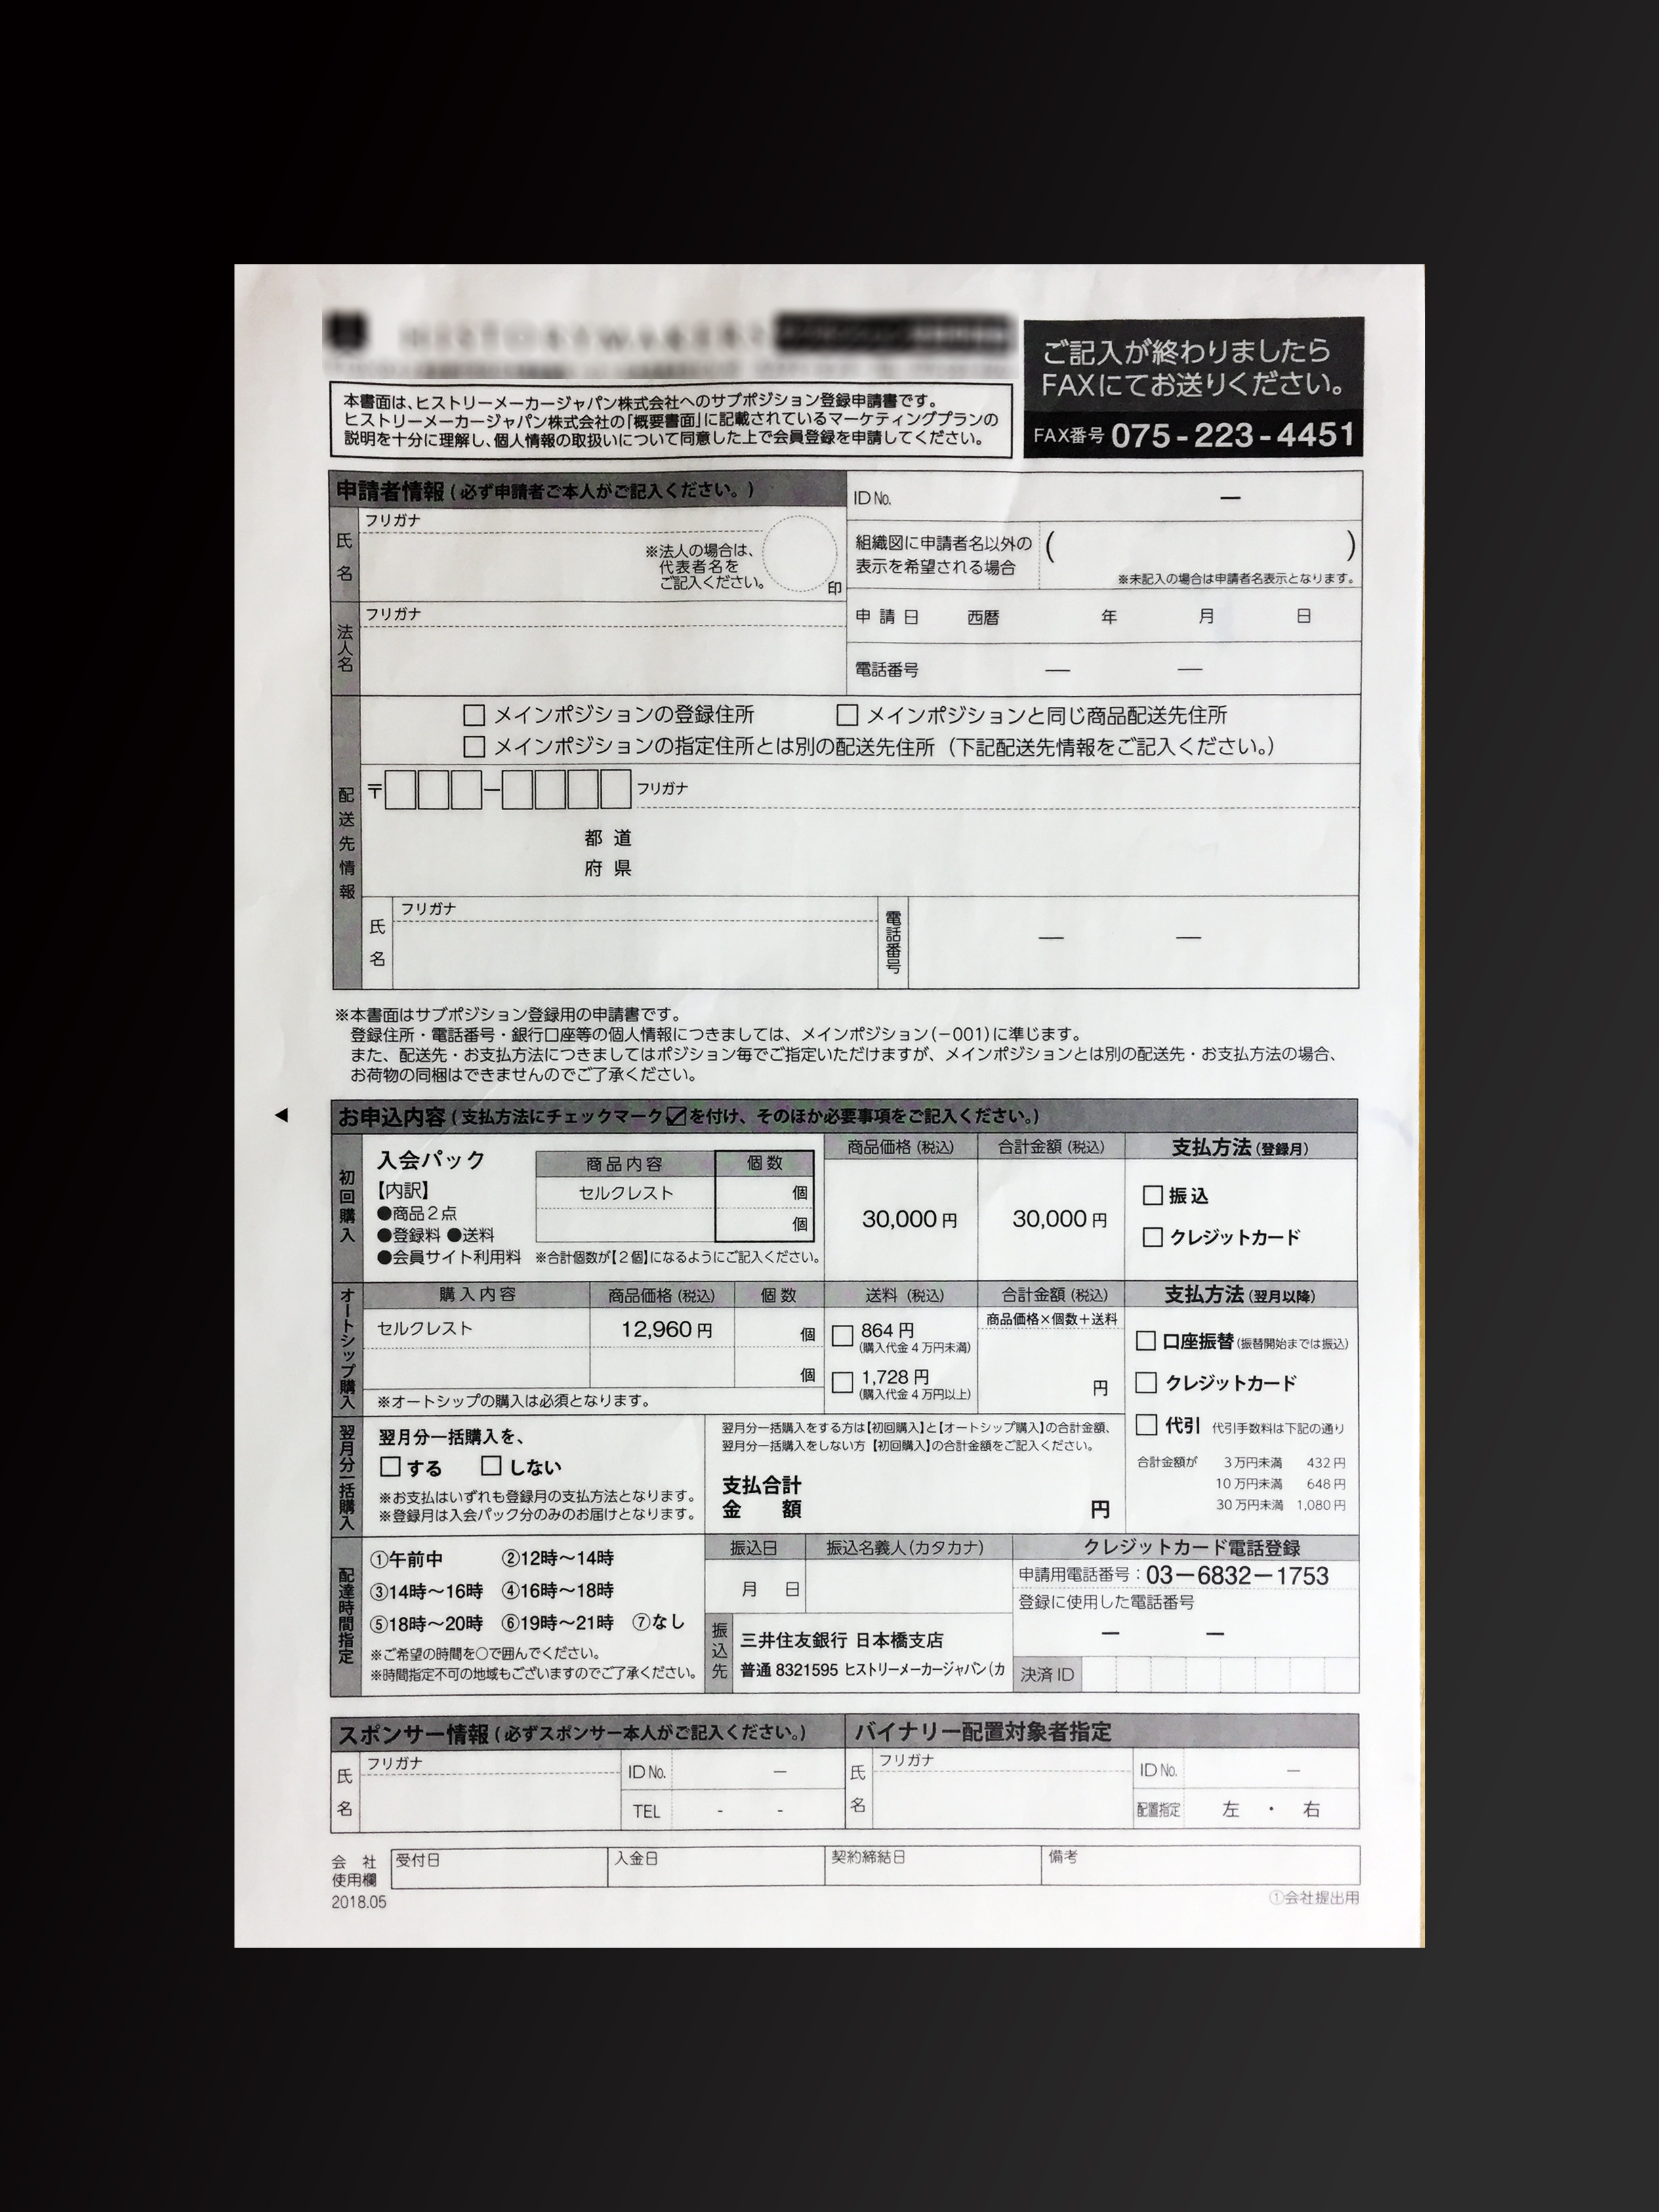 サプリメント製造業で使用するサブポジション登録申請書(2枚複写)の伝票作成実績